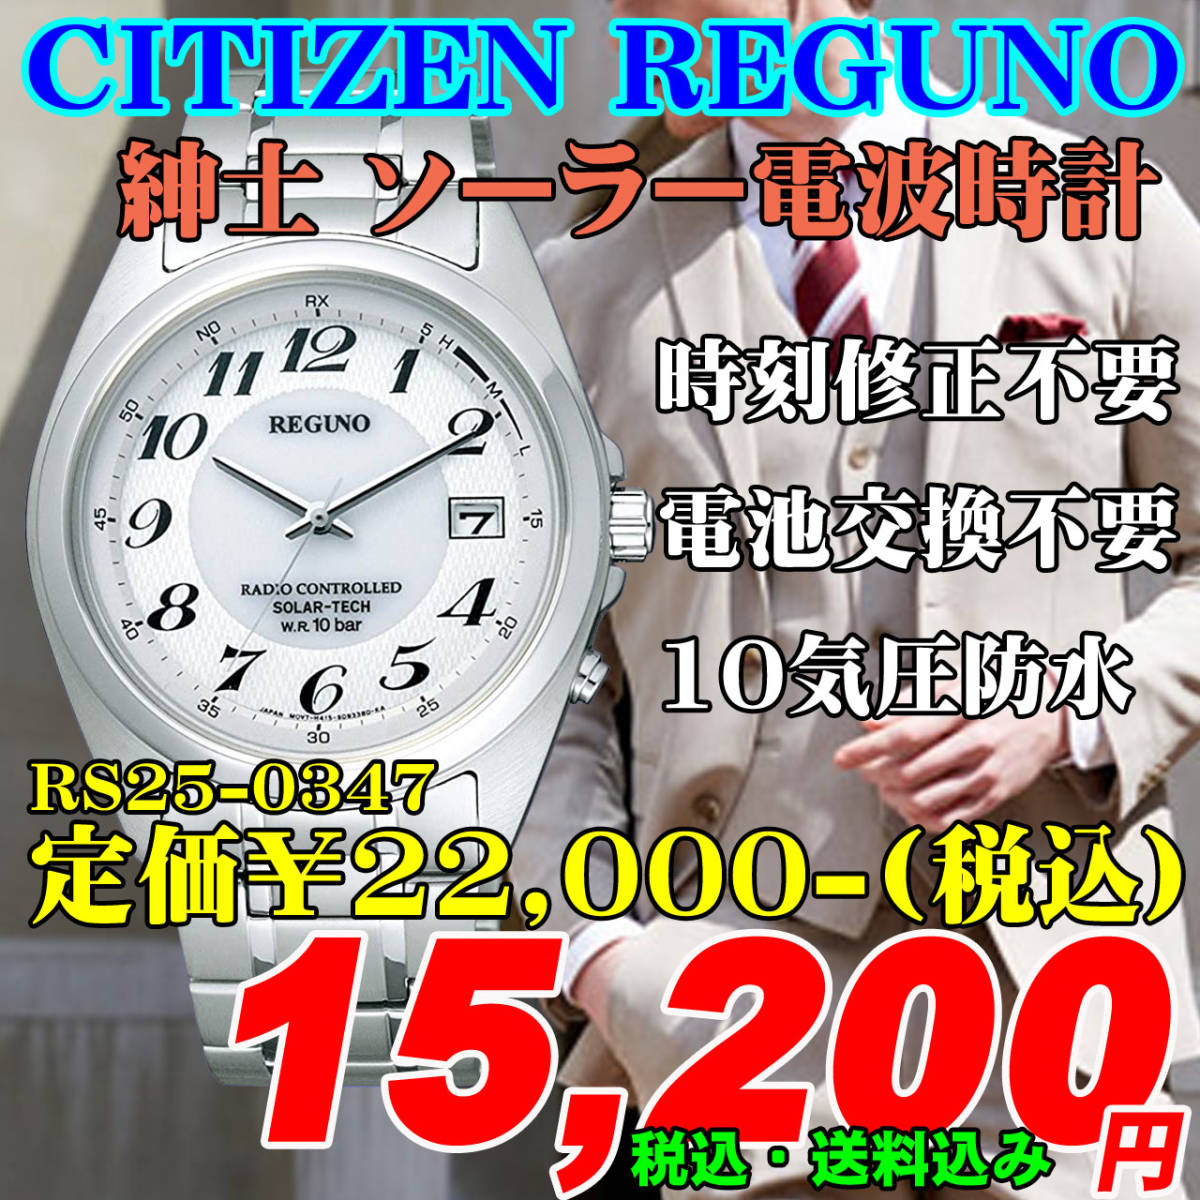 新品 即決 CITIZEN シチズン REGUNO レグノ ソーラー電波時計 紳士 RS25-0347 定価￥22,000-(税込)